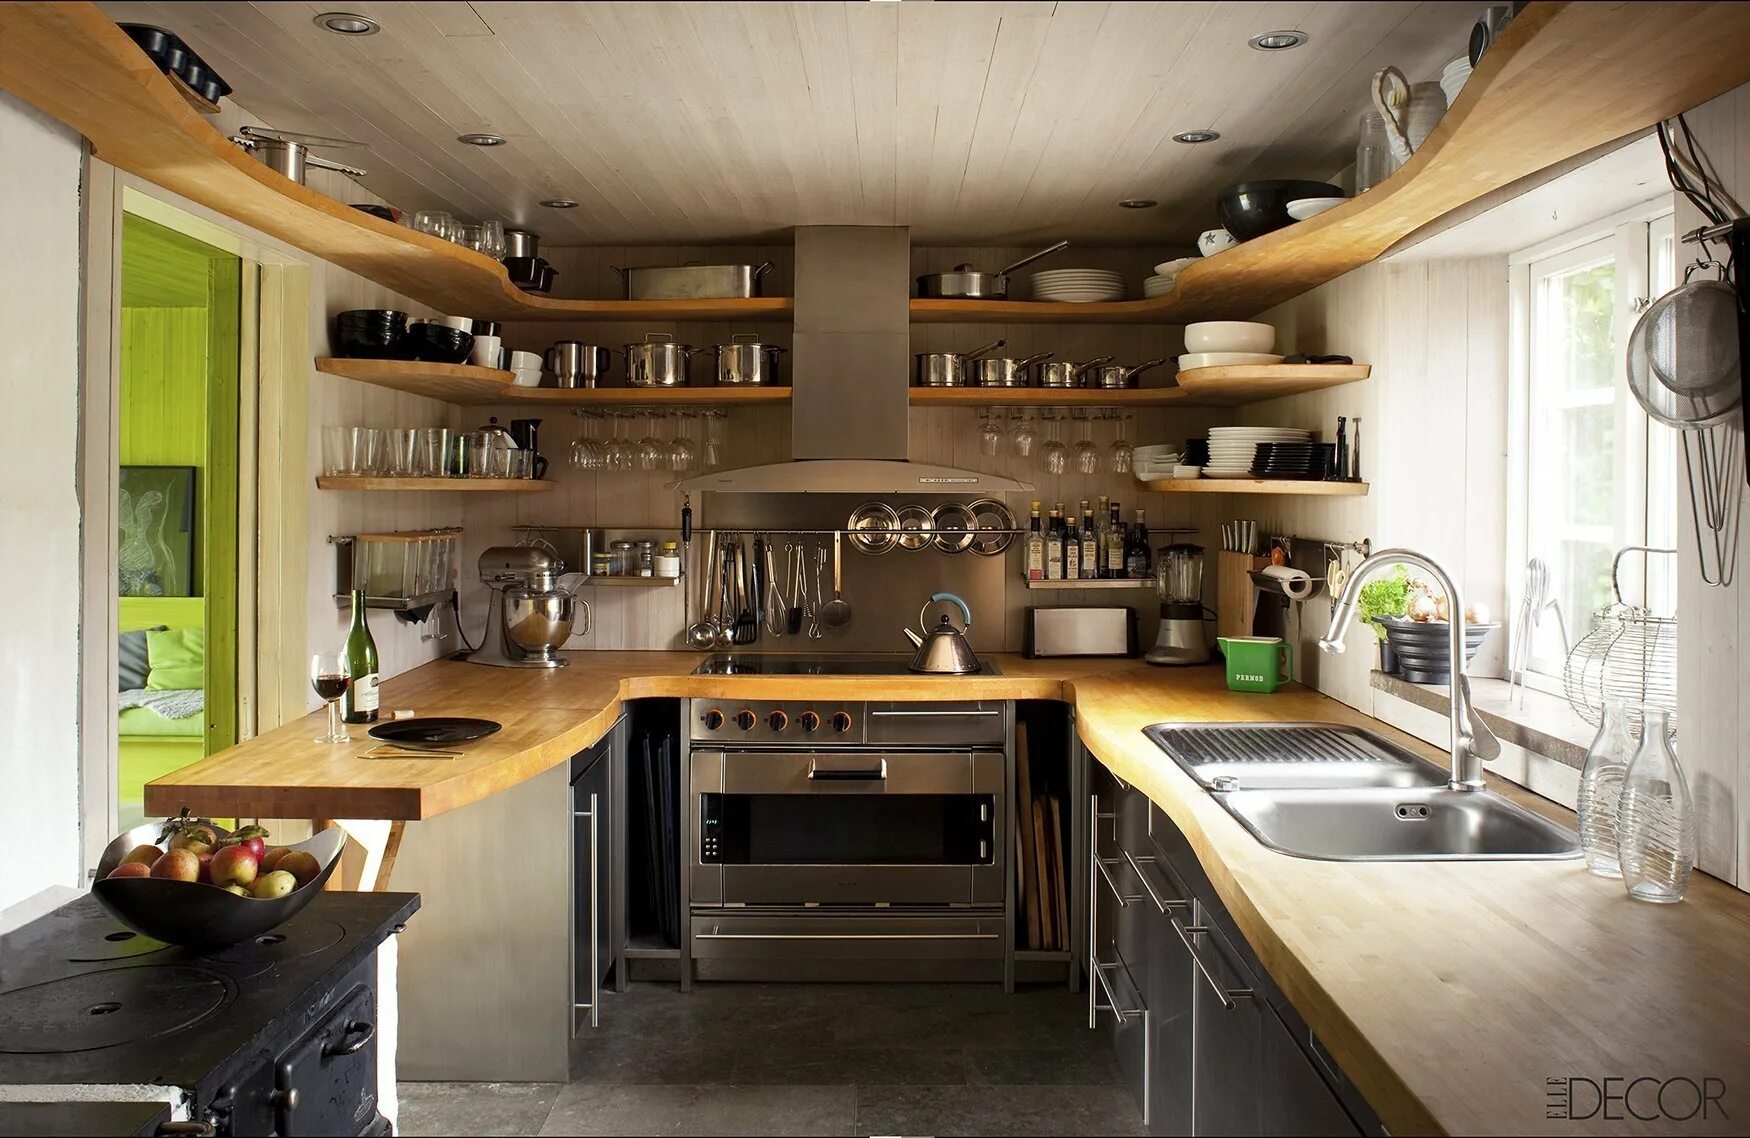 Делаем домашнюю кухню. Необычные решения для кухни. Интересные идеи для кухни. Необычные маленькие кухни. Интерьер небольшой кухни в частном доме.